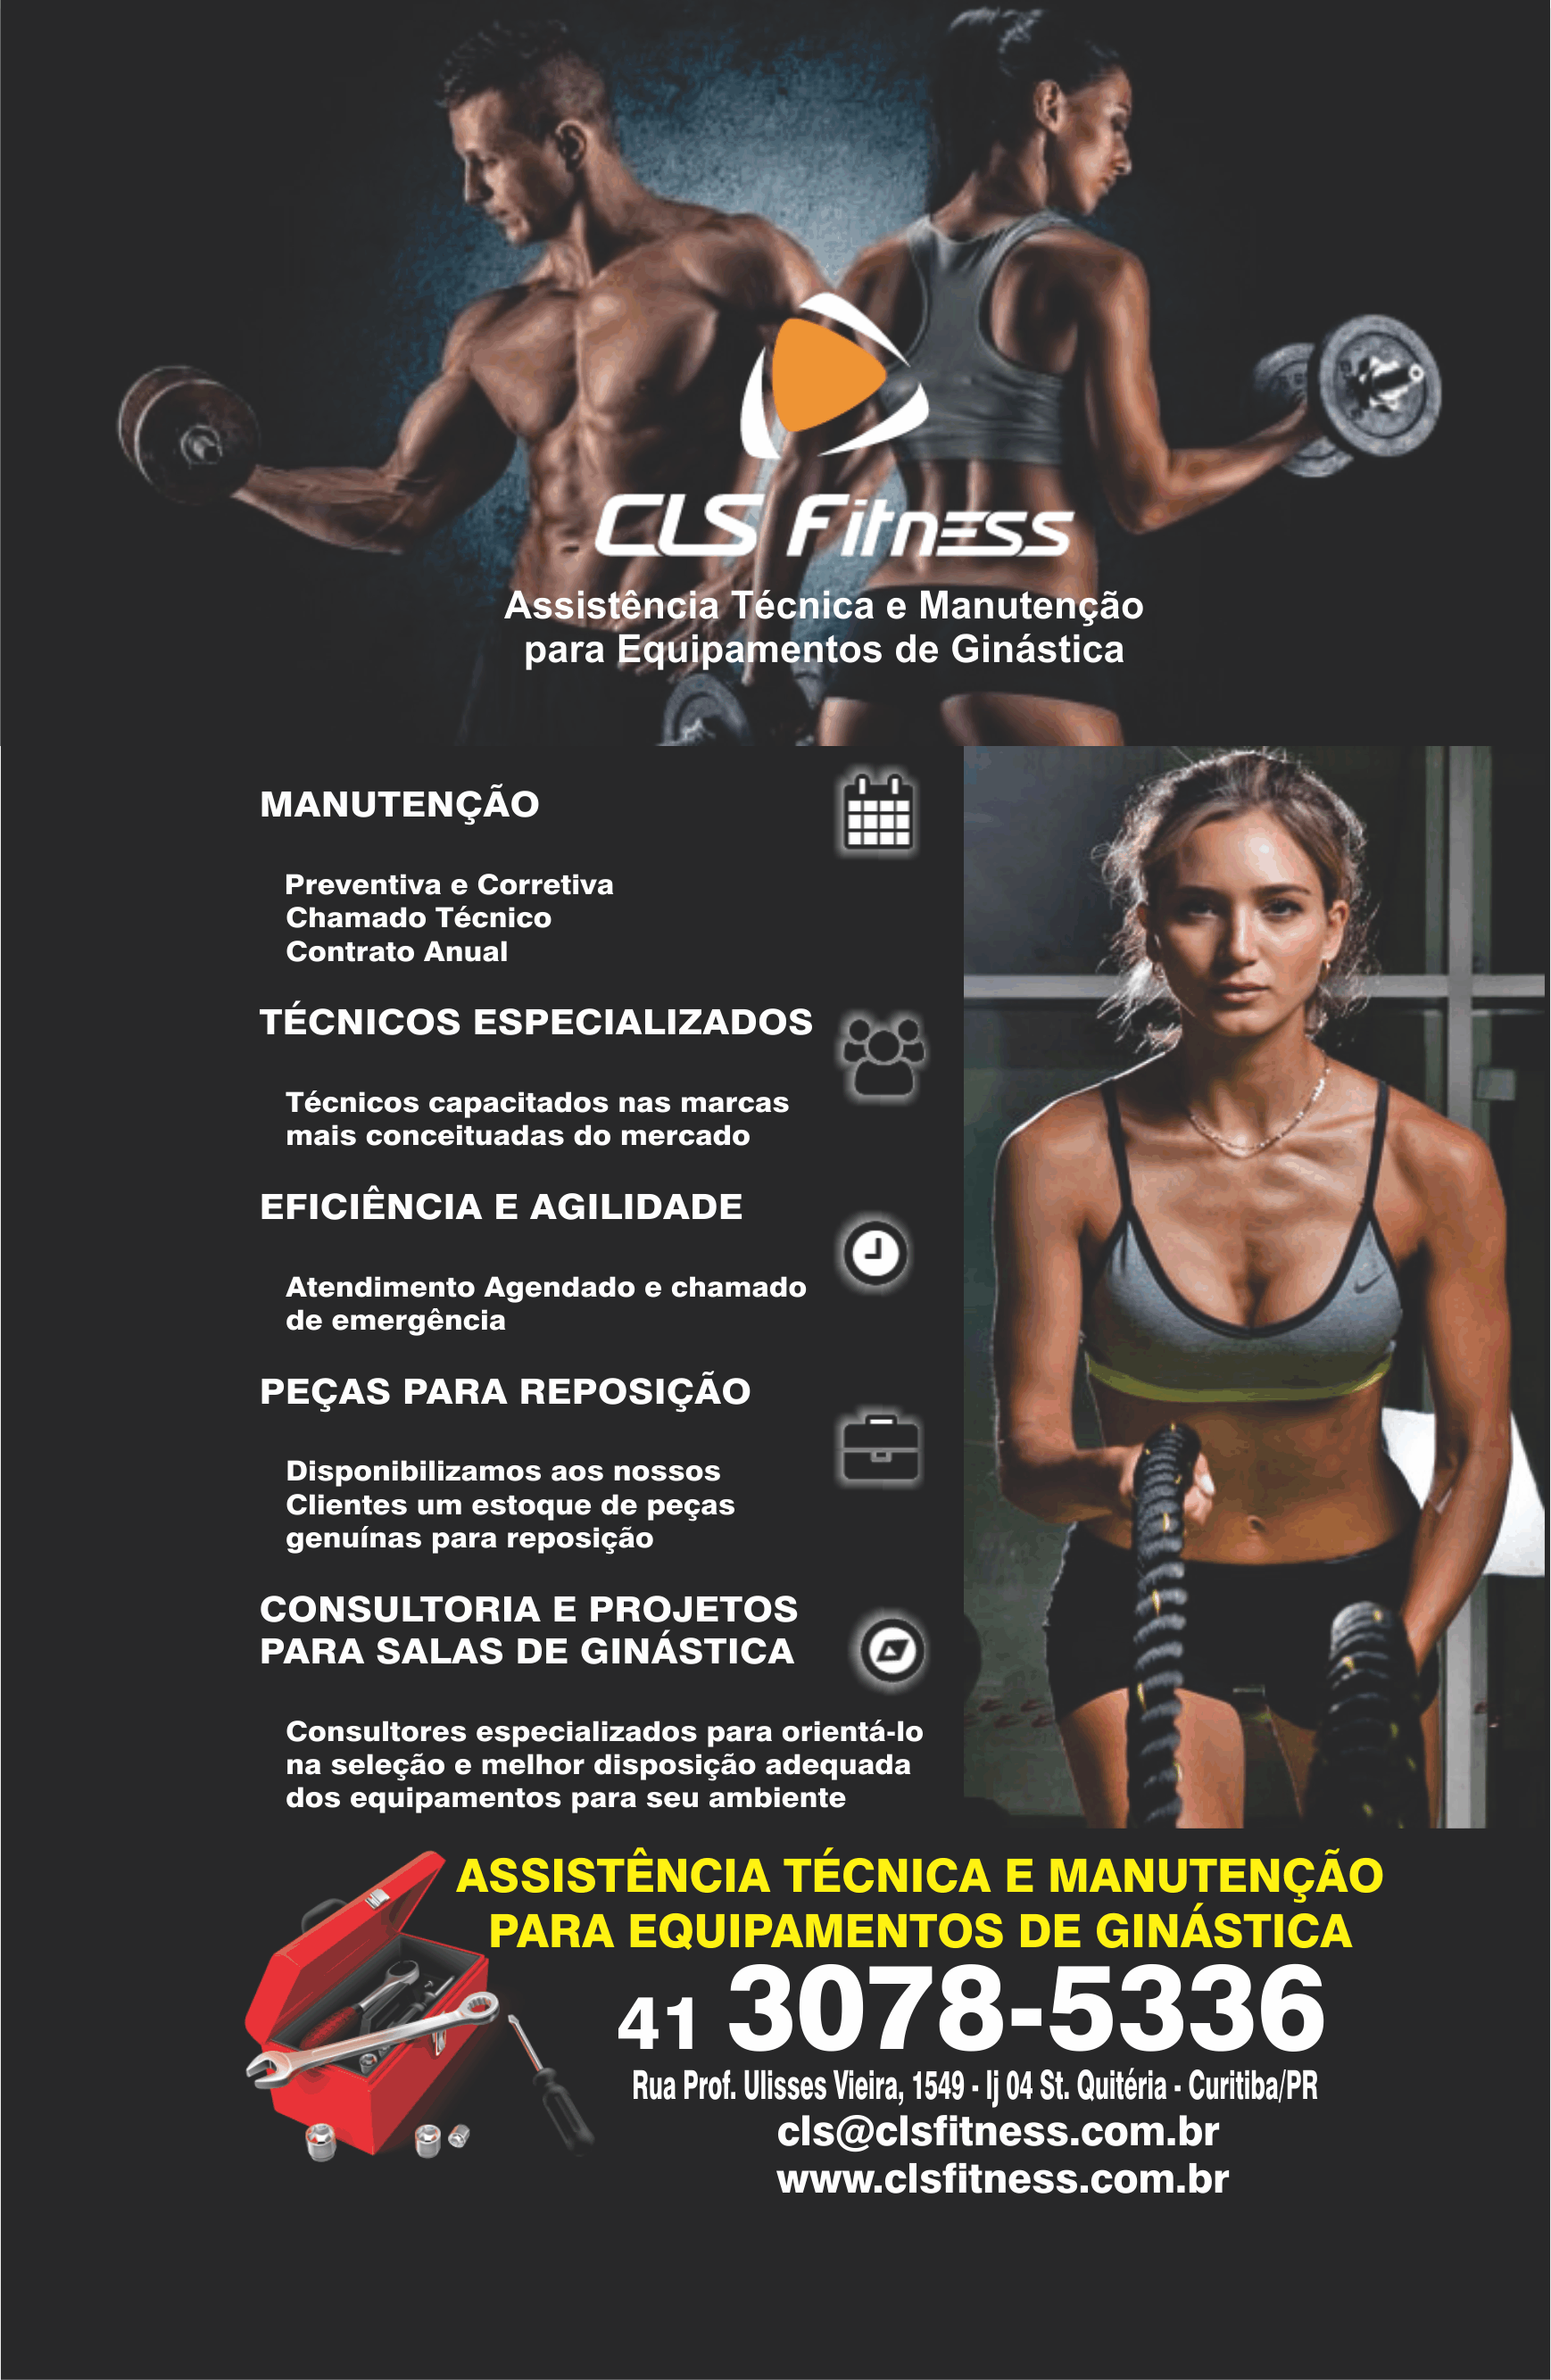 CLS Fitness Assistência Técnica e Manutenção para Equipamentos de Ginástica       RUA PROFESSOR ULISSES VIEIRA, 1549, CURITIBA - PR  Fones: (41) 3078-5336 /